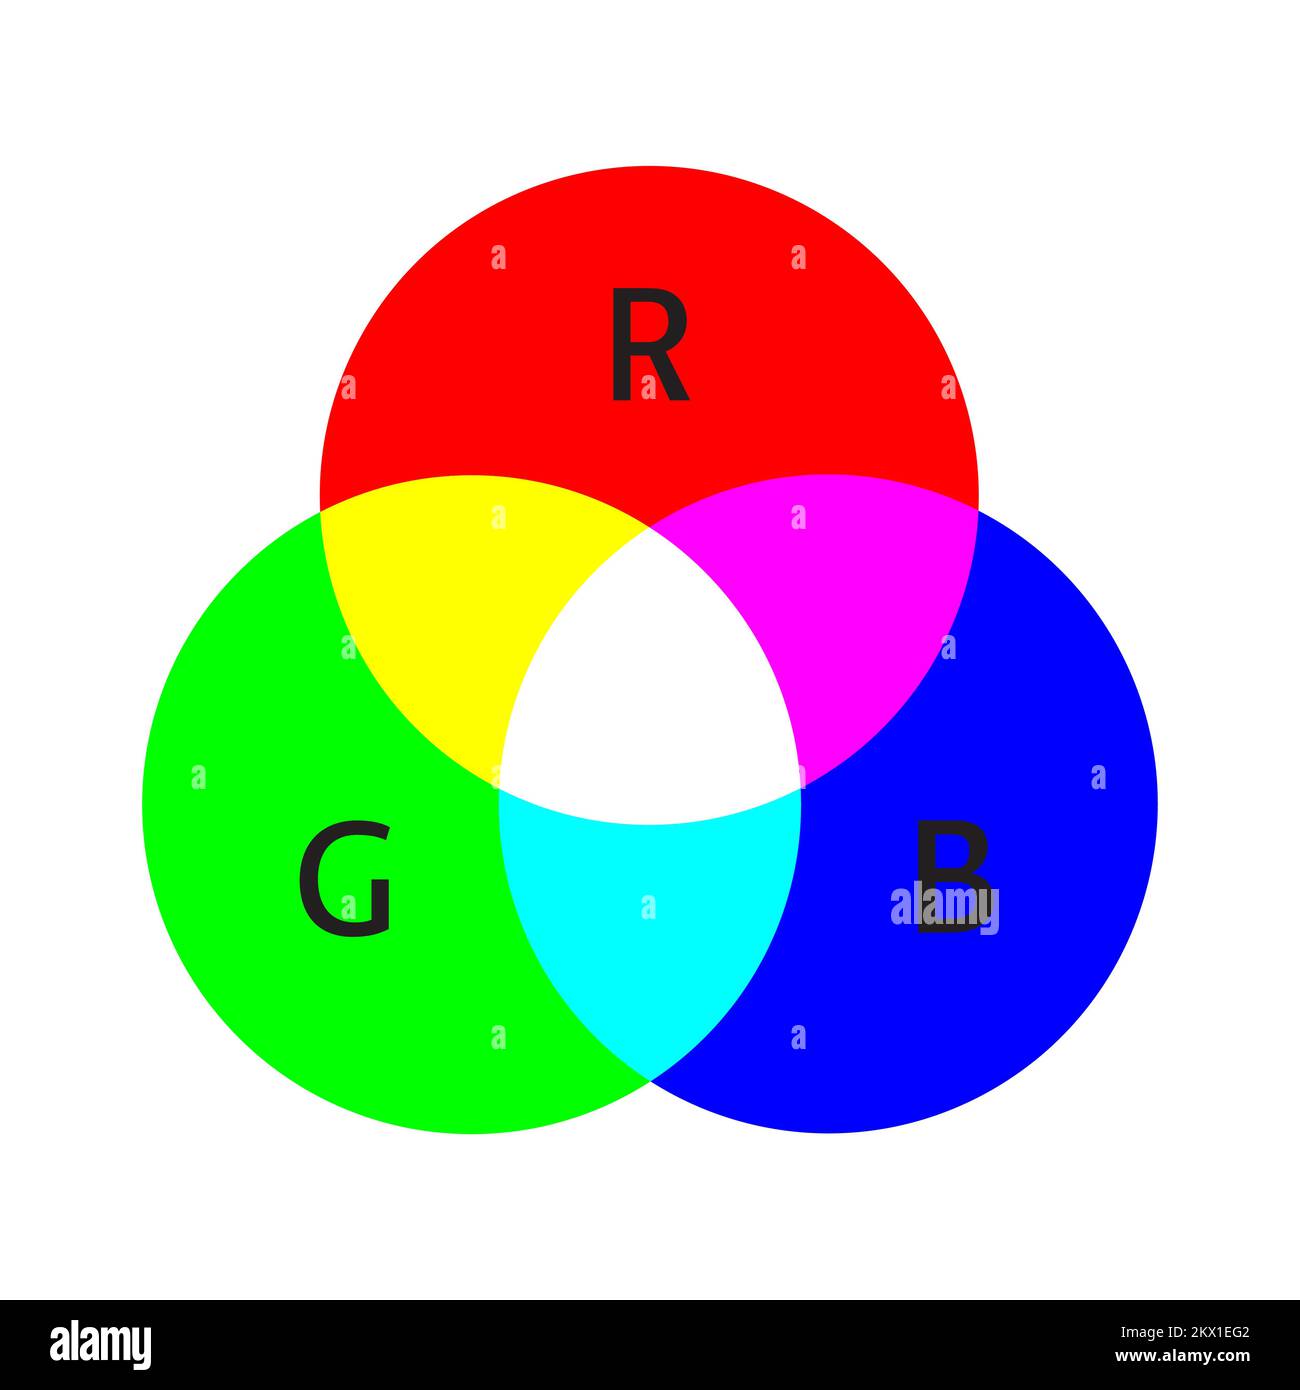 Schema del modello di colore RGB. Miscelazione additiva di tre colori primari. Tre cerchi sovrapposti. Illustrazione semplice per l'istruzione Illustrazione Vettoriale